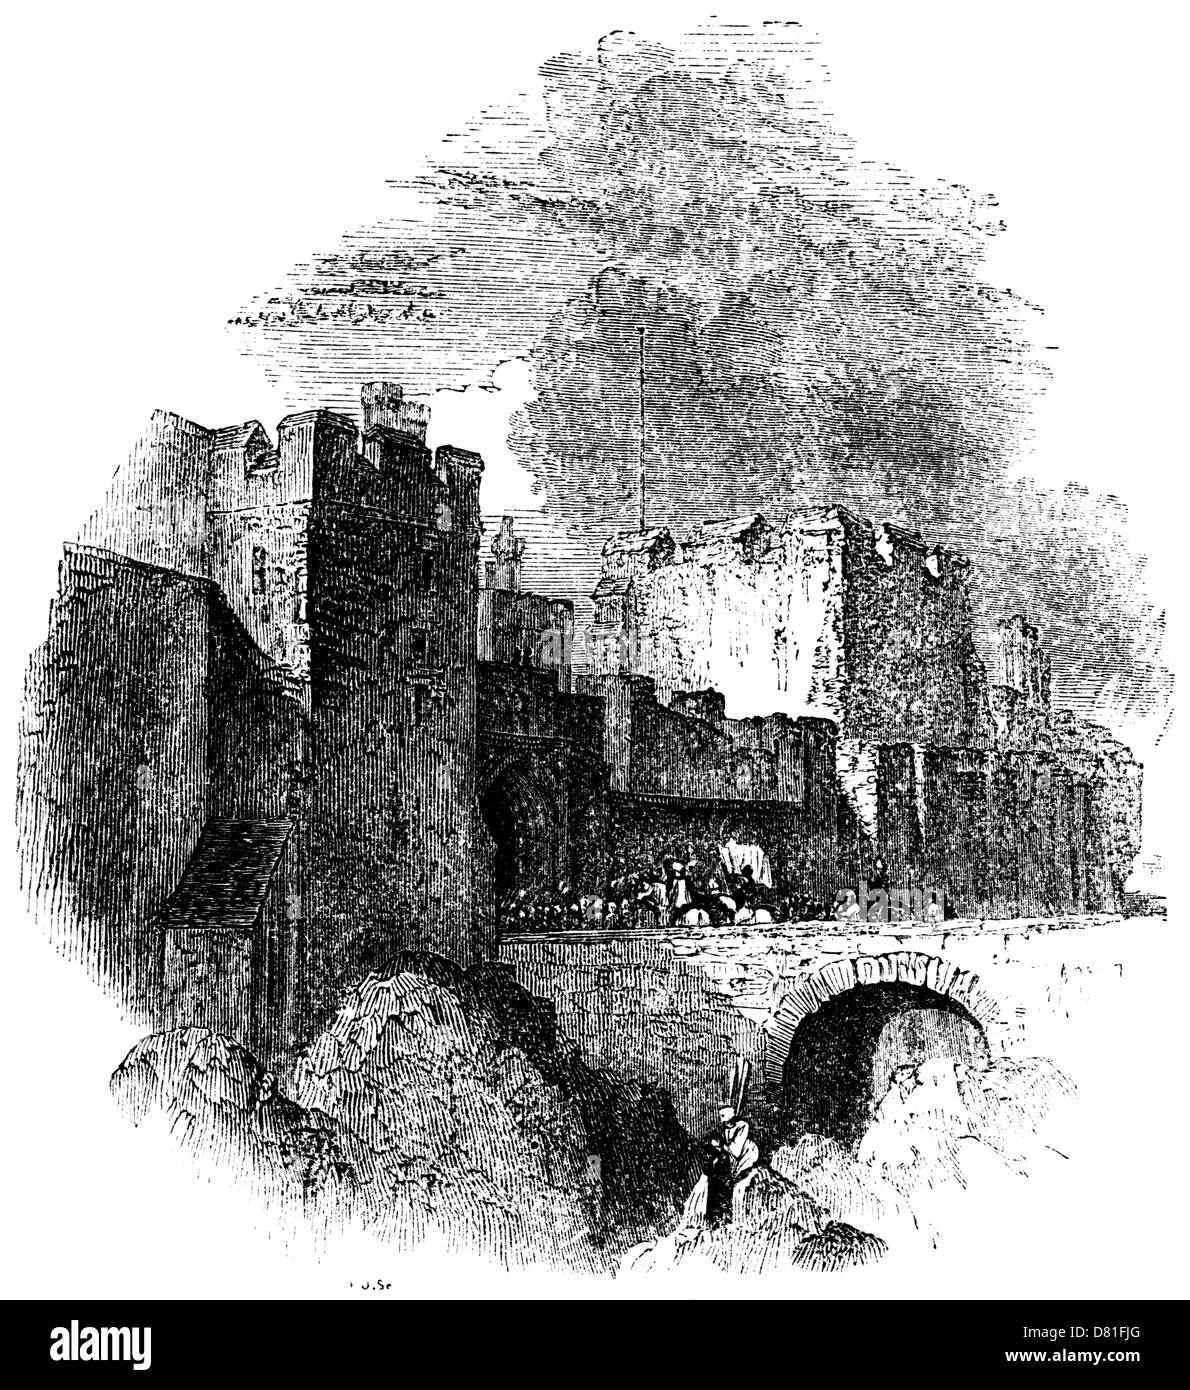 Le château de Carlisle - Les chevaliers arrivent à cheval sur le pont et dans les murs du château. Scène d'une ancienne gravure sur bois Banque D'Images